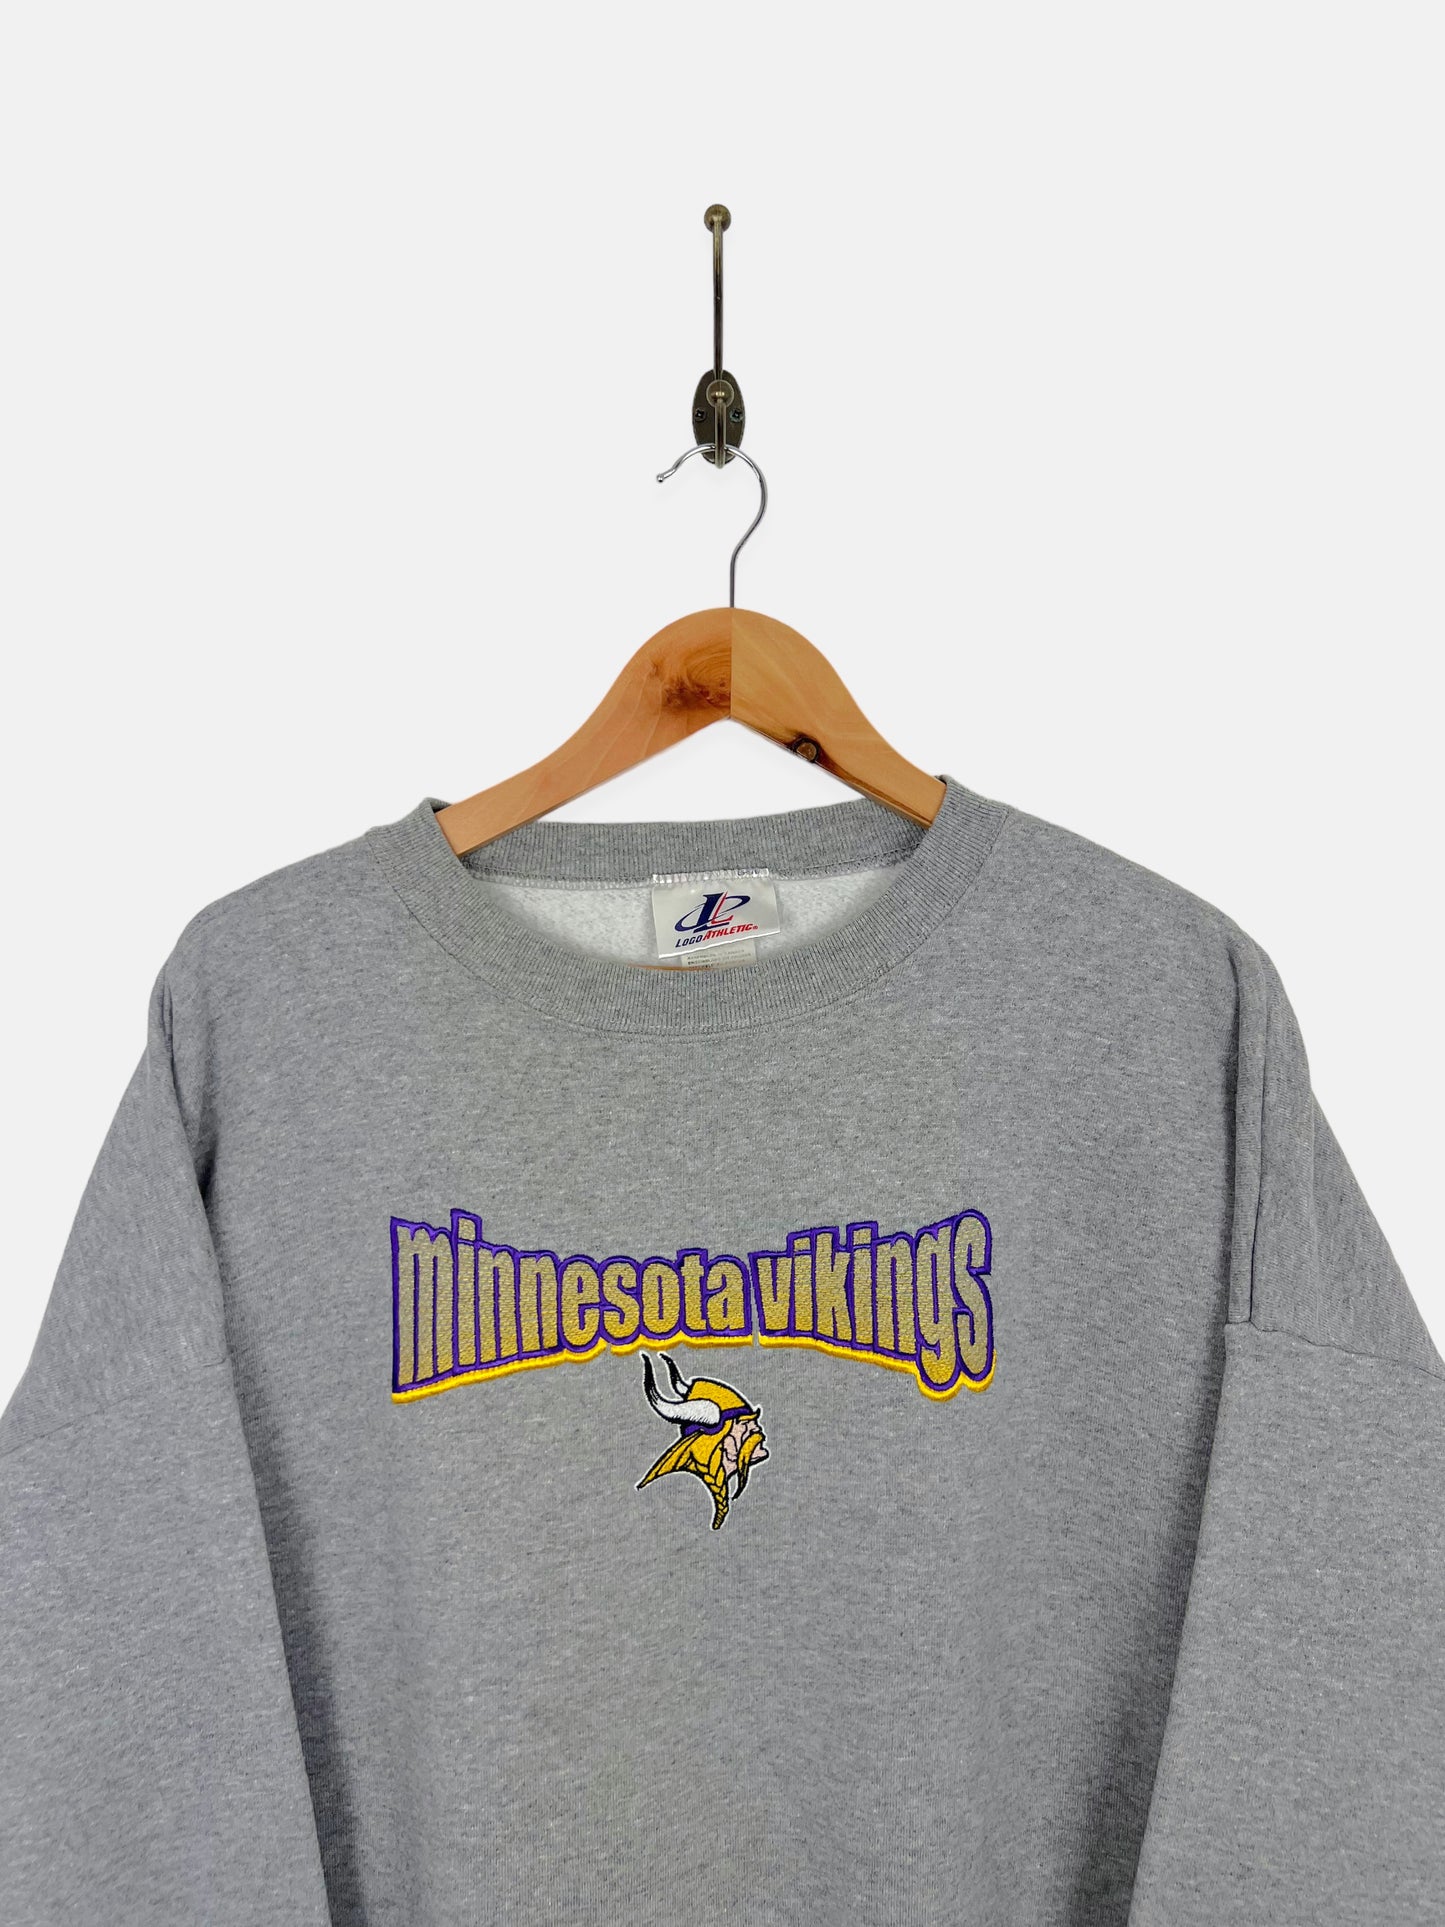 90's Minnesota Vikings NFL Embroidered Vintage Sweatshirt Size 3XL